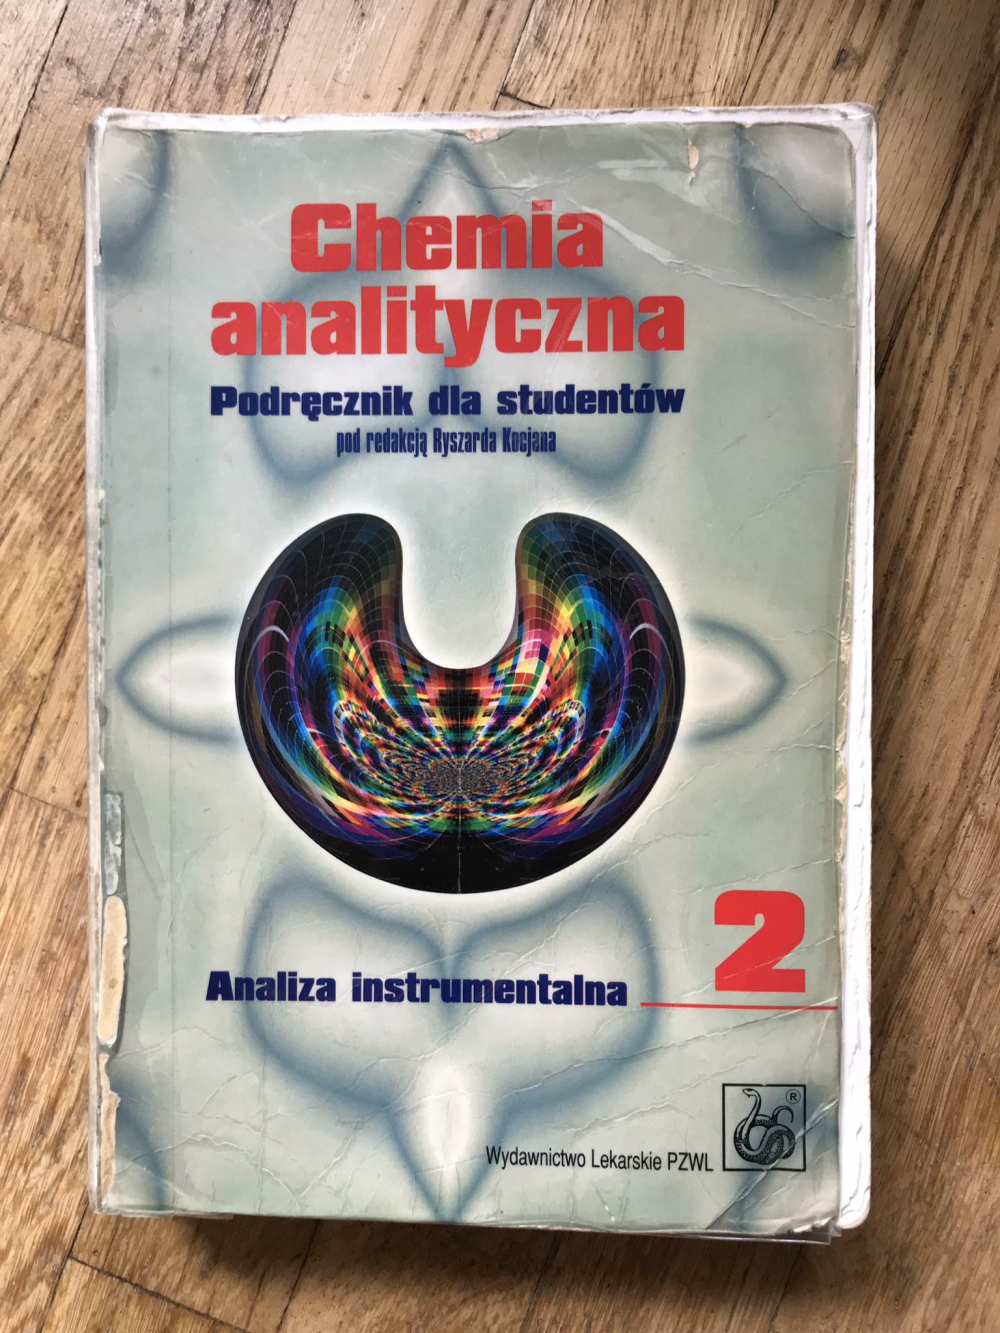 Książka dla studentów chemia analityczna kocjan podrecznik